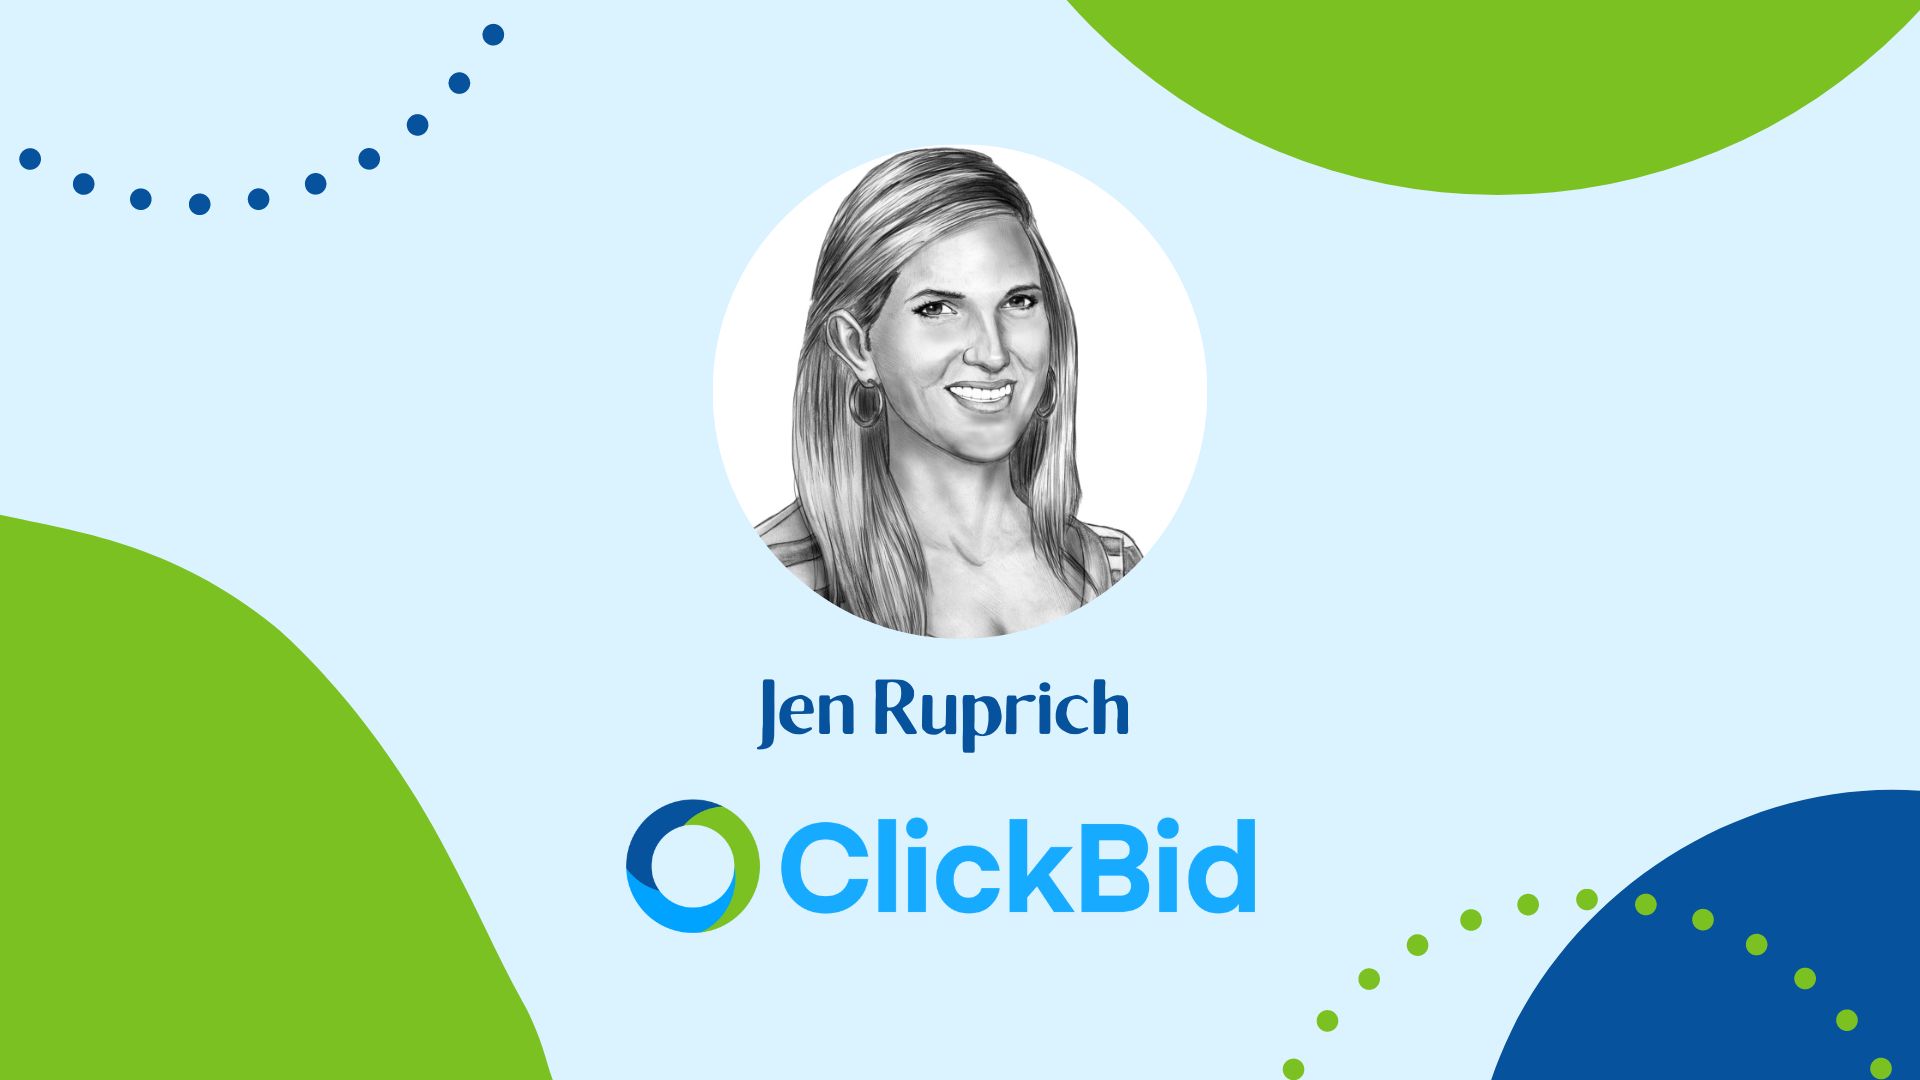 Get to know ClickBid: Jen Ruprich